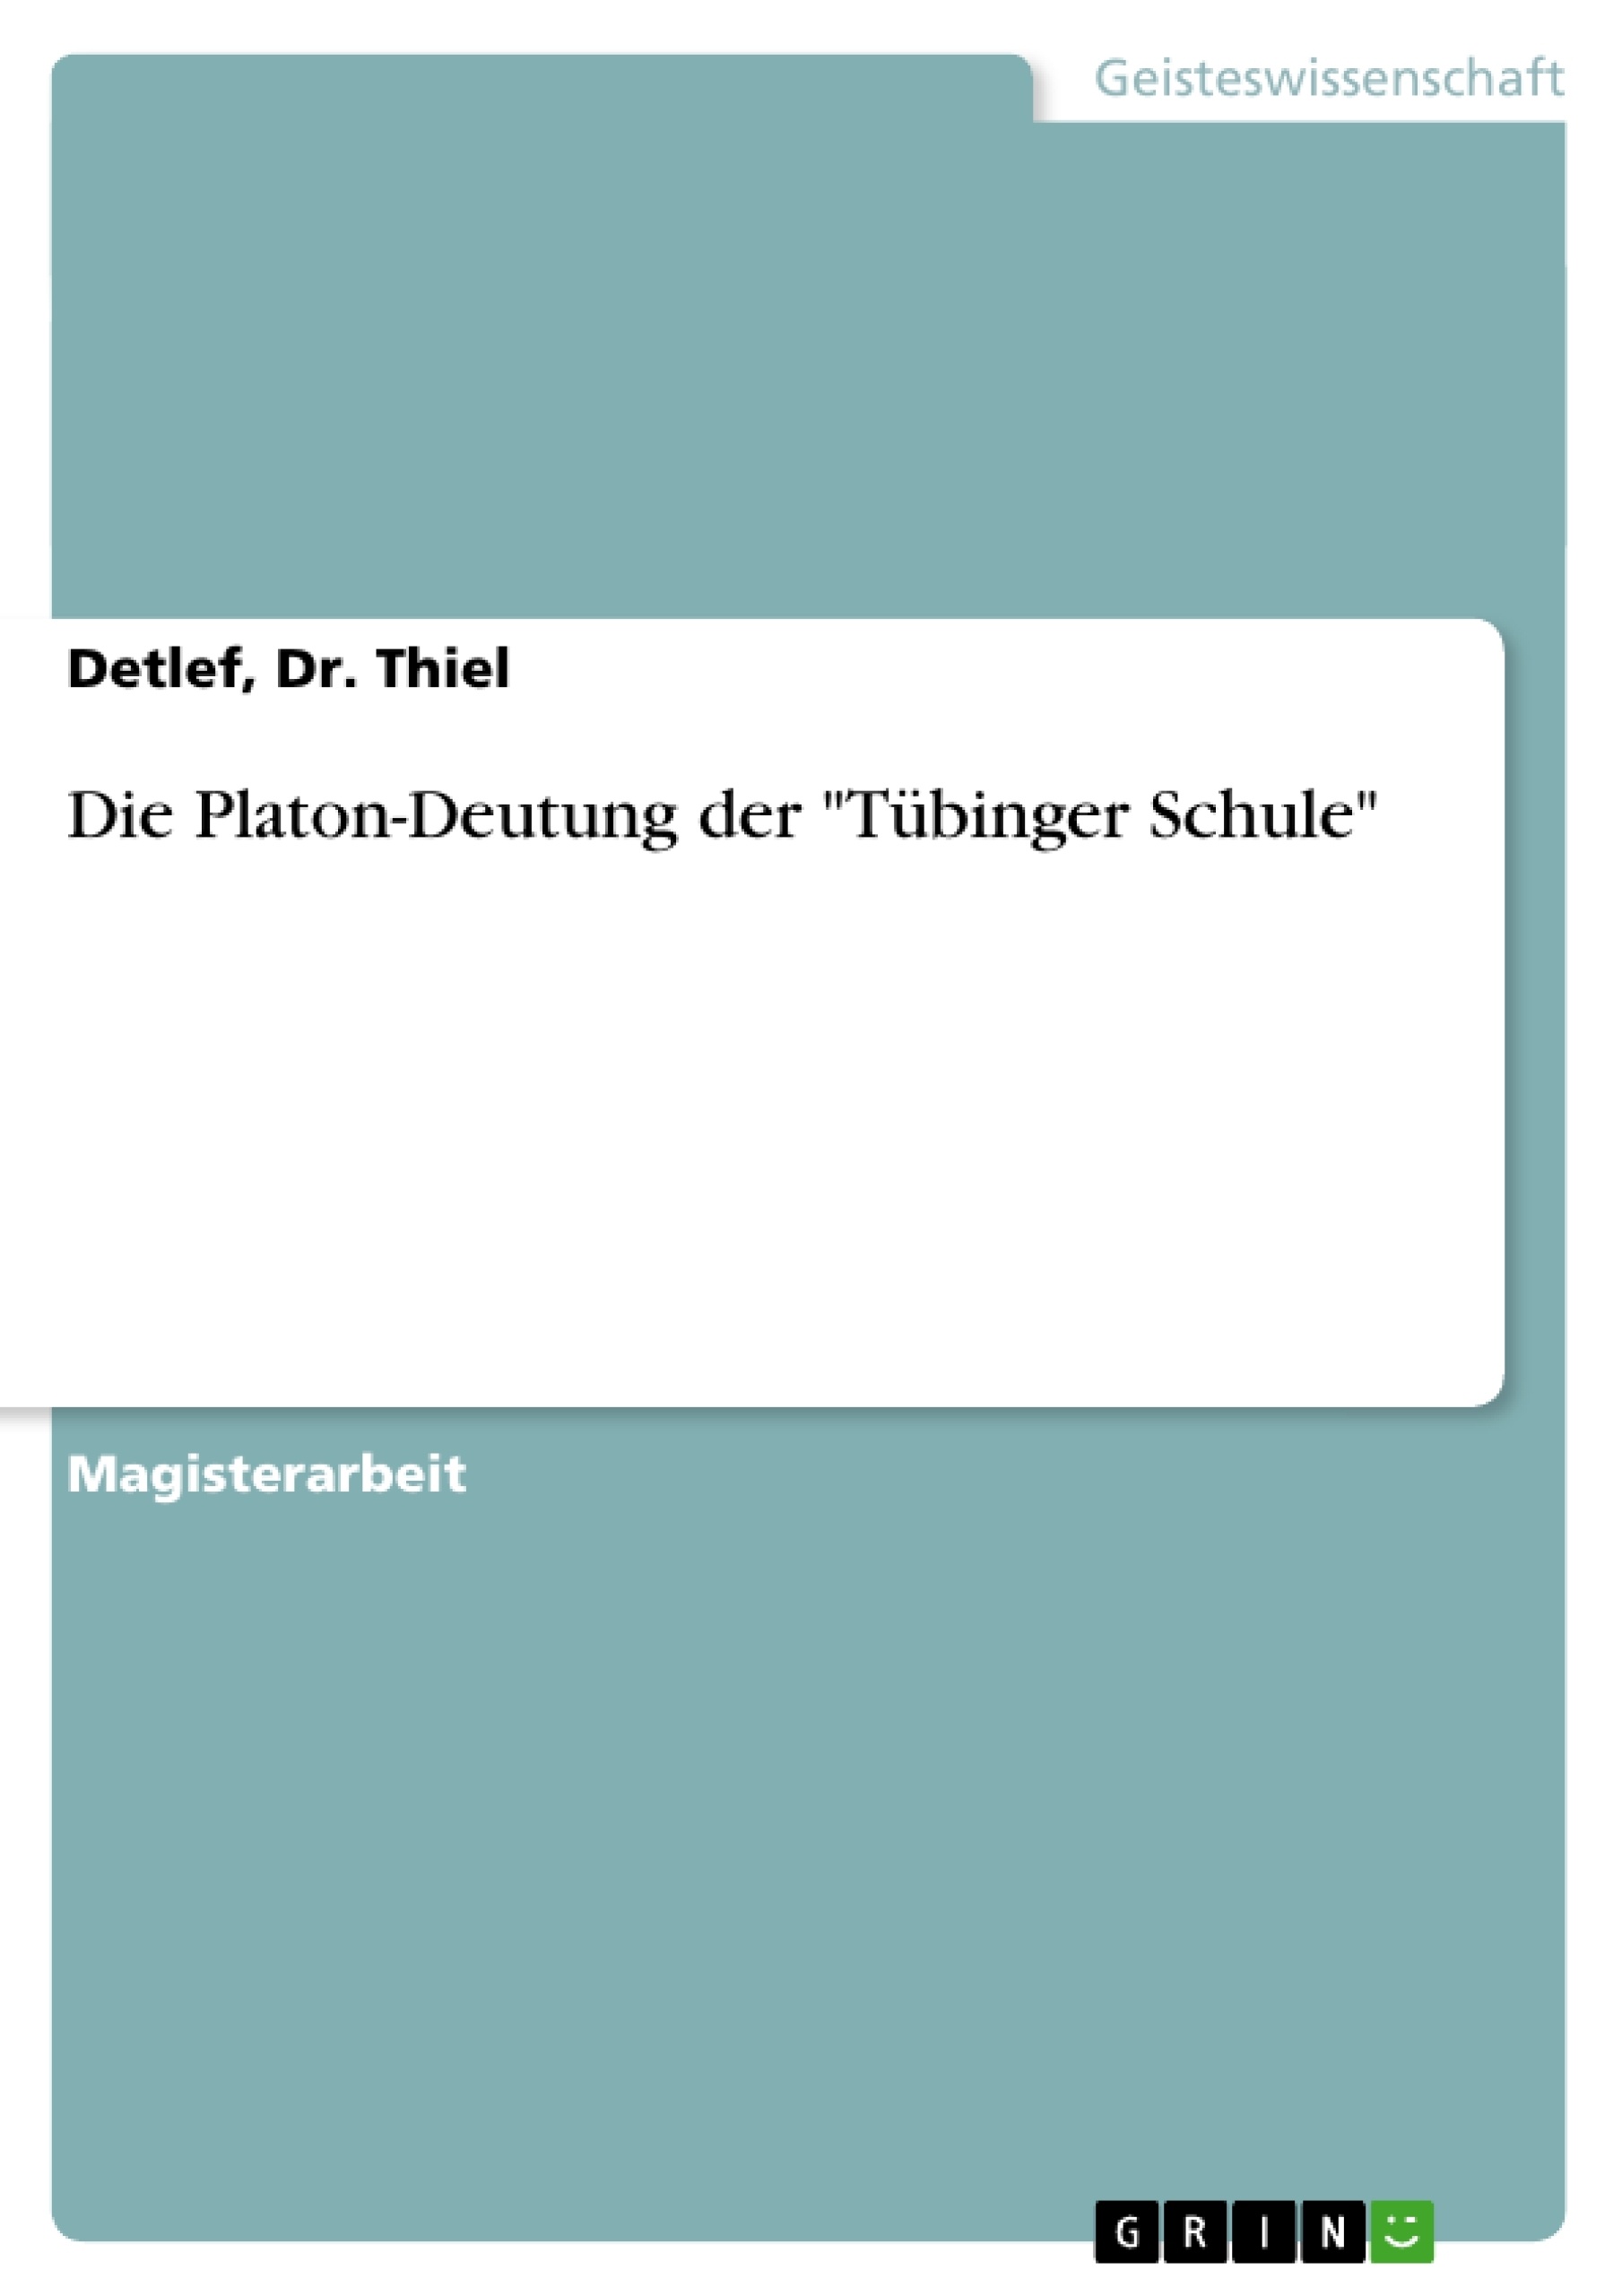 Titre: Die Platon-Deutung der "Tübinger Schule"